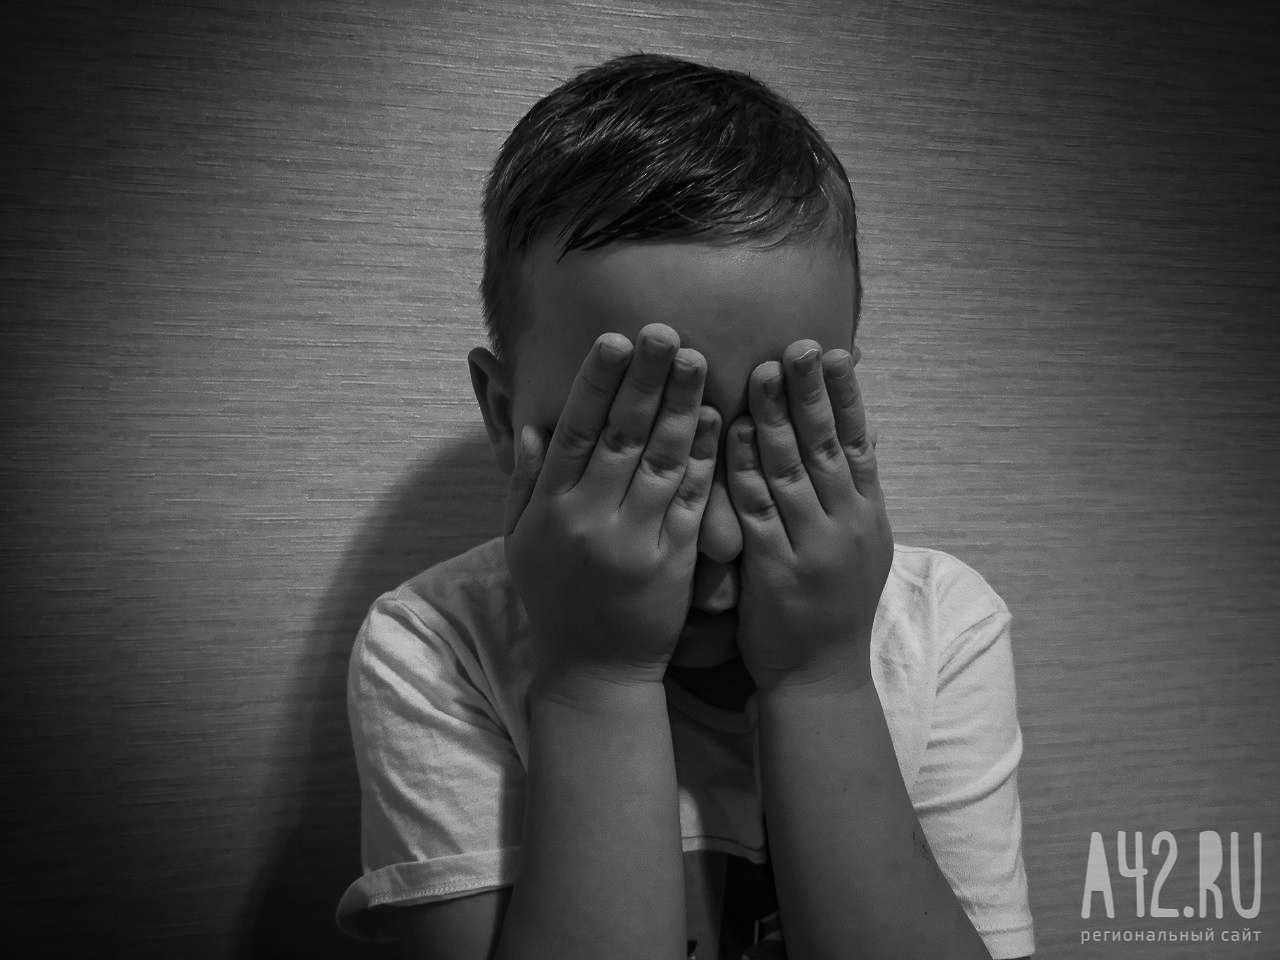 Соцсети: неизвестные пытались похитить ребёнка в Кемерове 